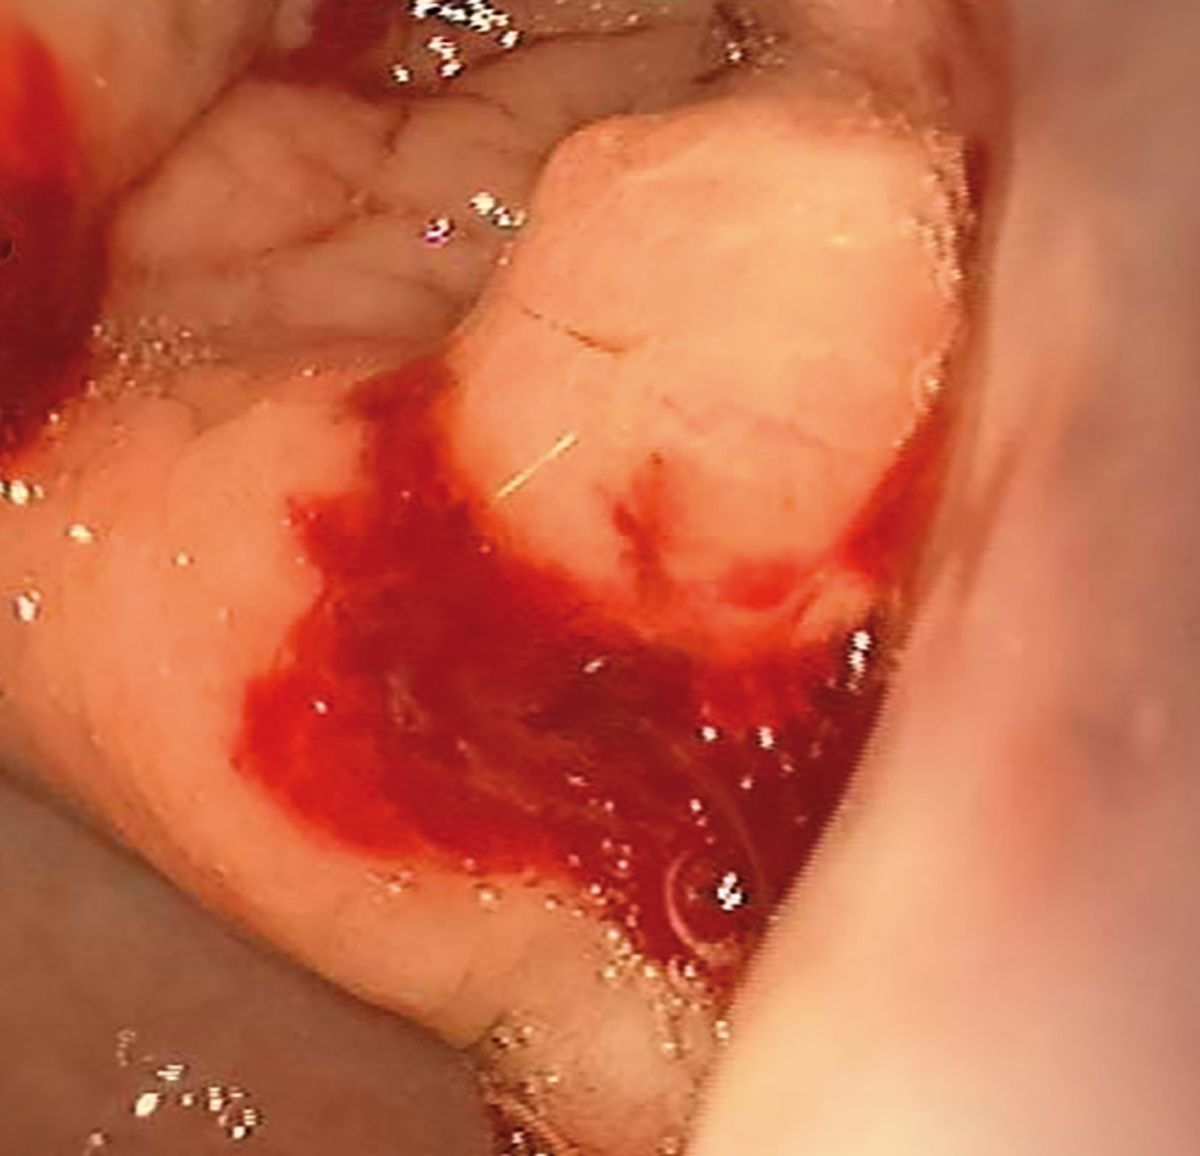 Caso clinico 3: l’endoscopia ha rivelato alterazioni suggestive di cancro allo stomaco. Si noti l’incisura angolare polipoide e ispessita, con sanguinamento post-biopsia.